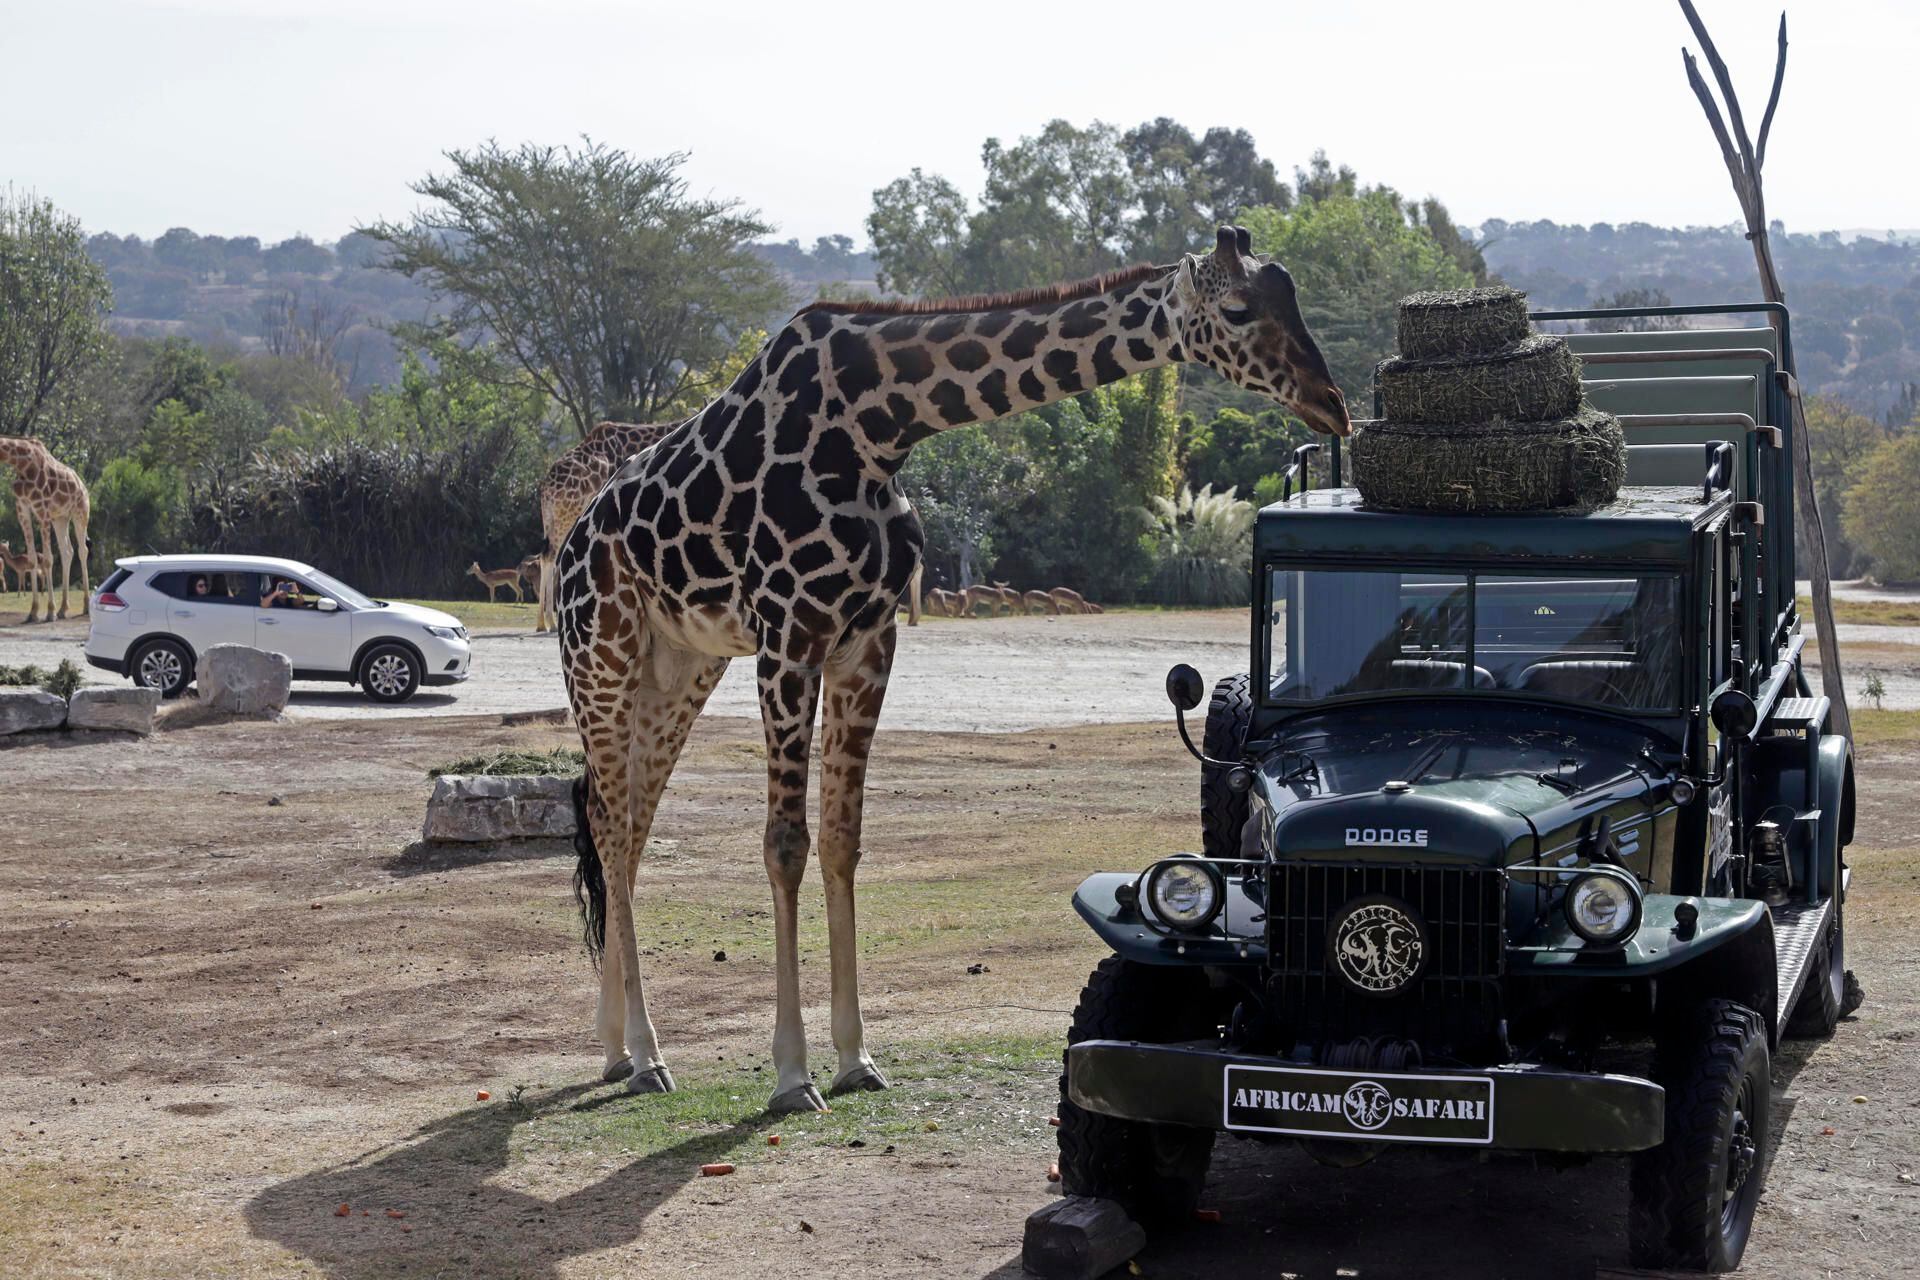 Los cuidadores de Africam Safari afirman que Benito es una jirafa curiosa y pacífica.